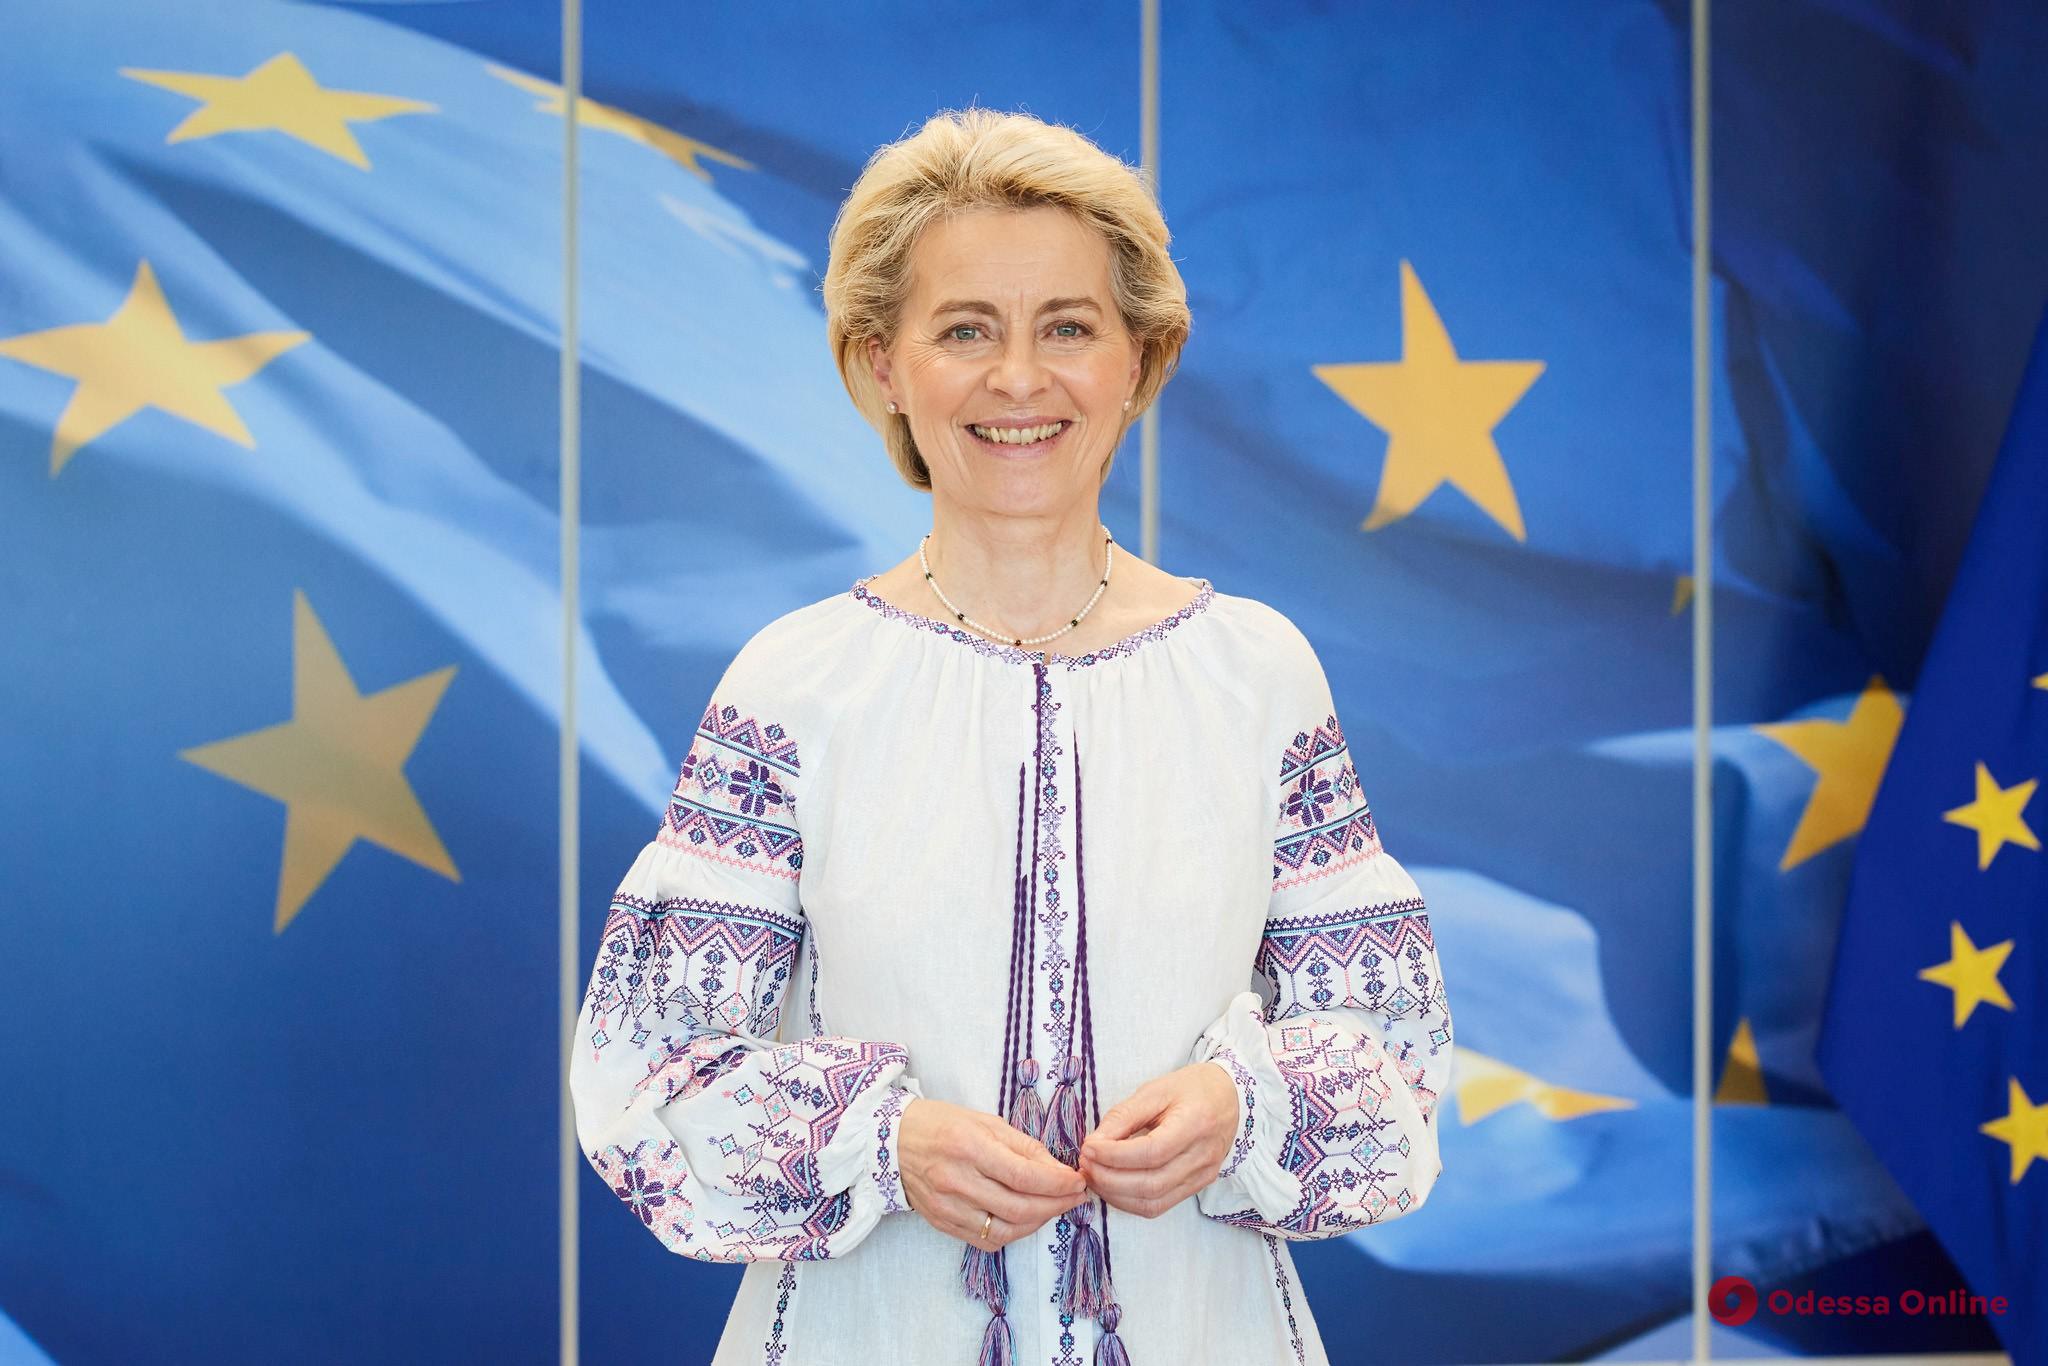 Президент Еврокомиссии фон дер Ляйен: «Следующий раздел истории ЕС сегодня пишет народ Украины»